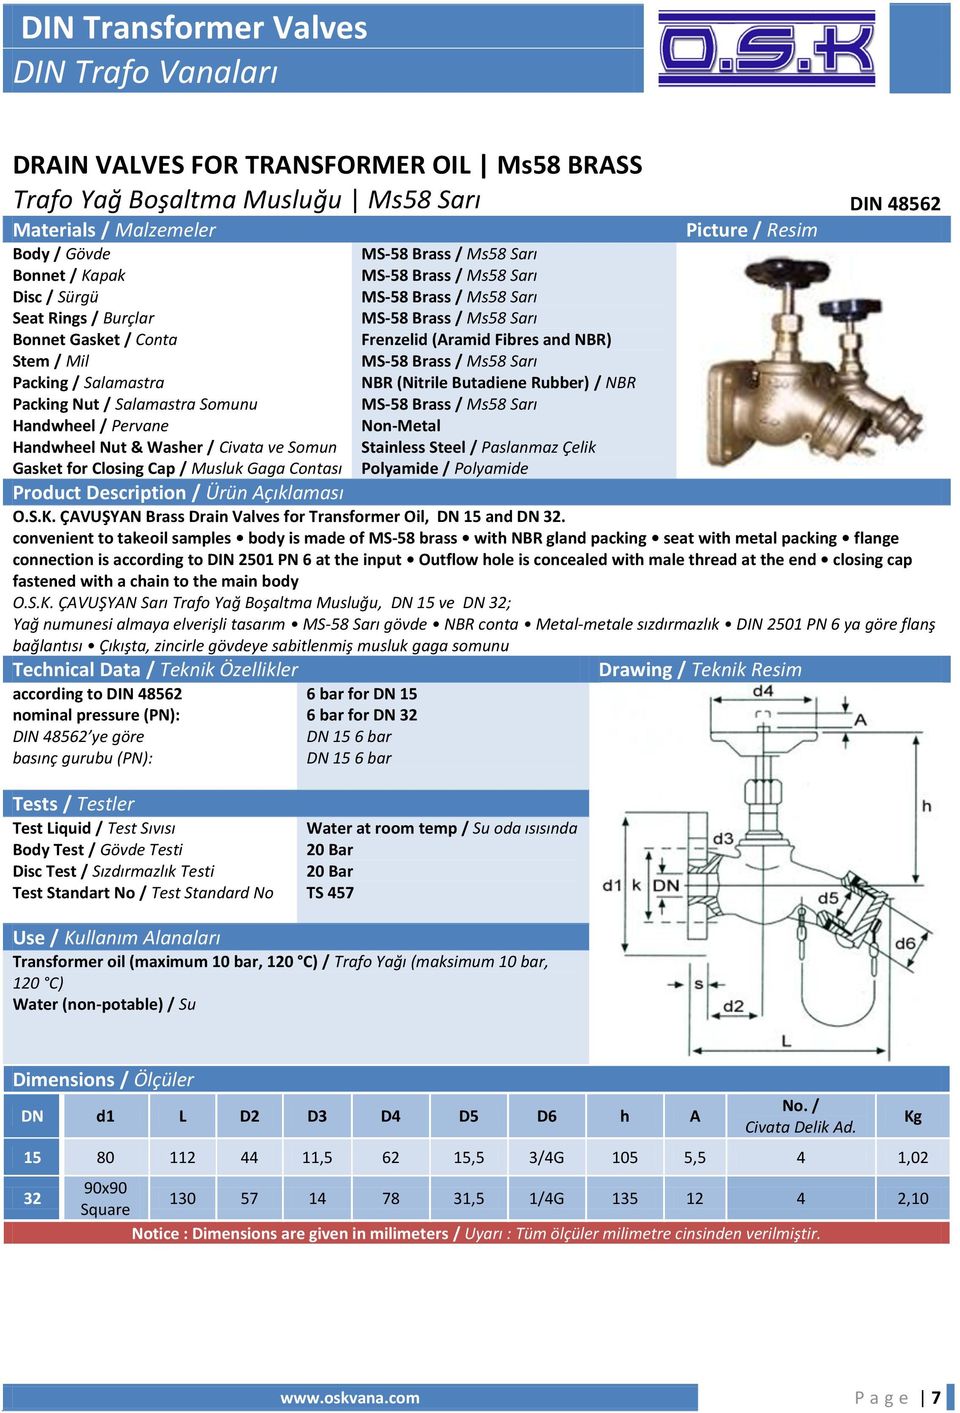 Stainless Steel / Paslanmaz Çelik Polyamide / Polyamide Product Description / Ürün Açıklaması O.S.K. ÇAVUŞYAN Brass Drain Valves for Transformer Oil, DN 15 and DN 32.